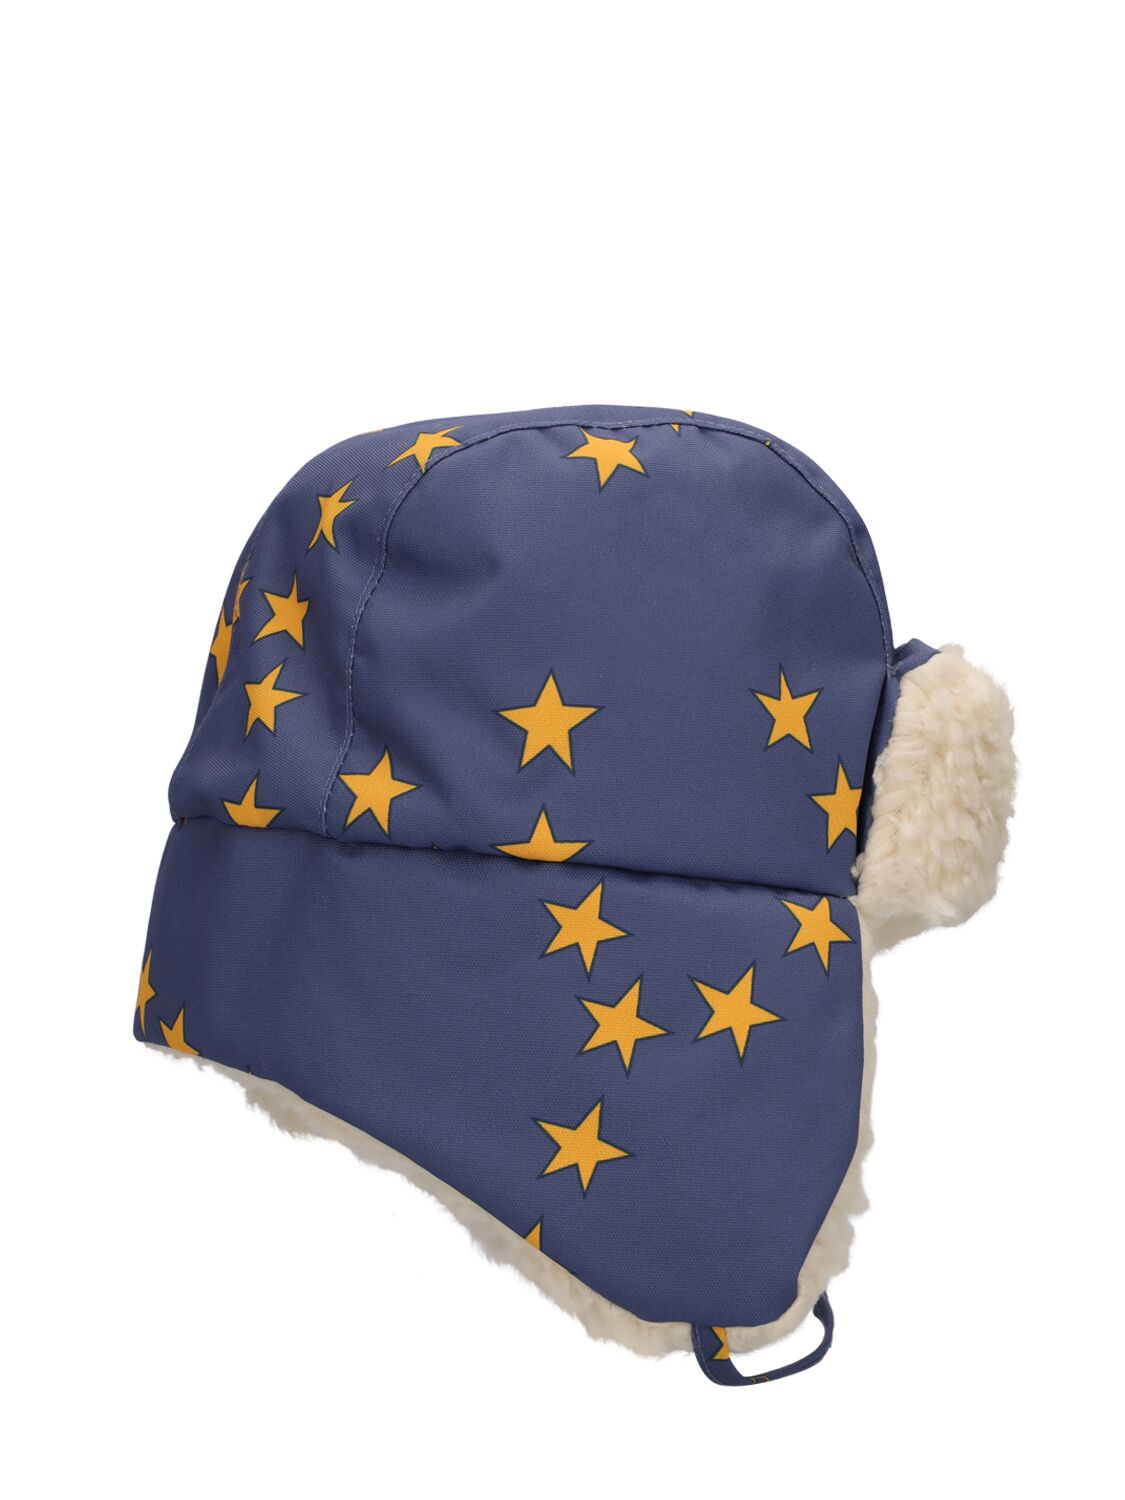 星星印花尼龙&毛绒帽子